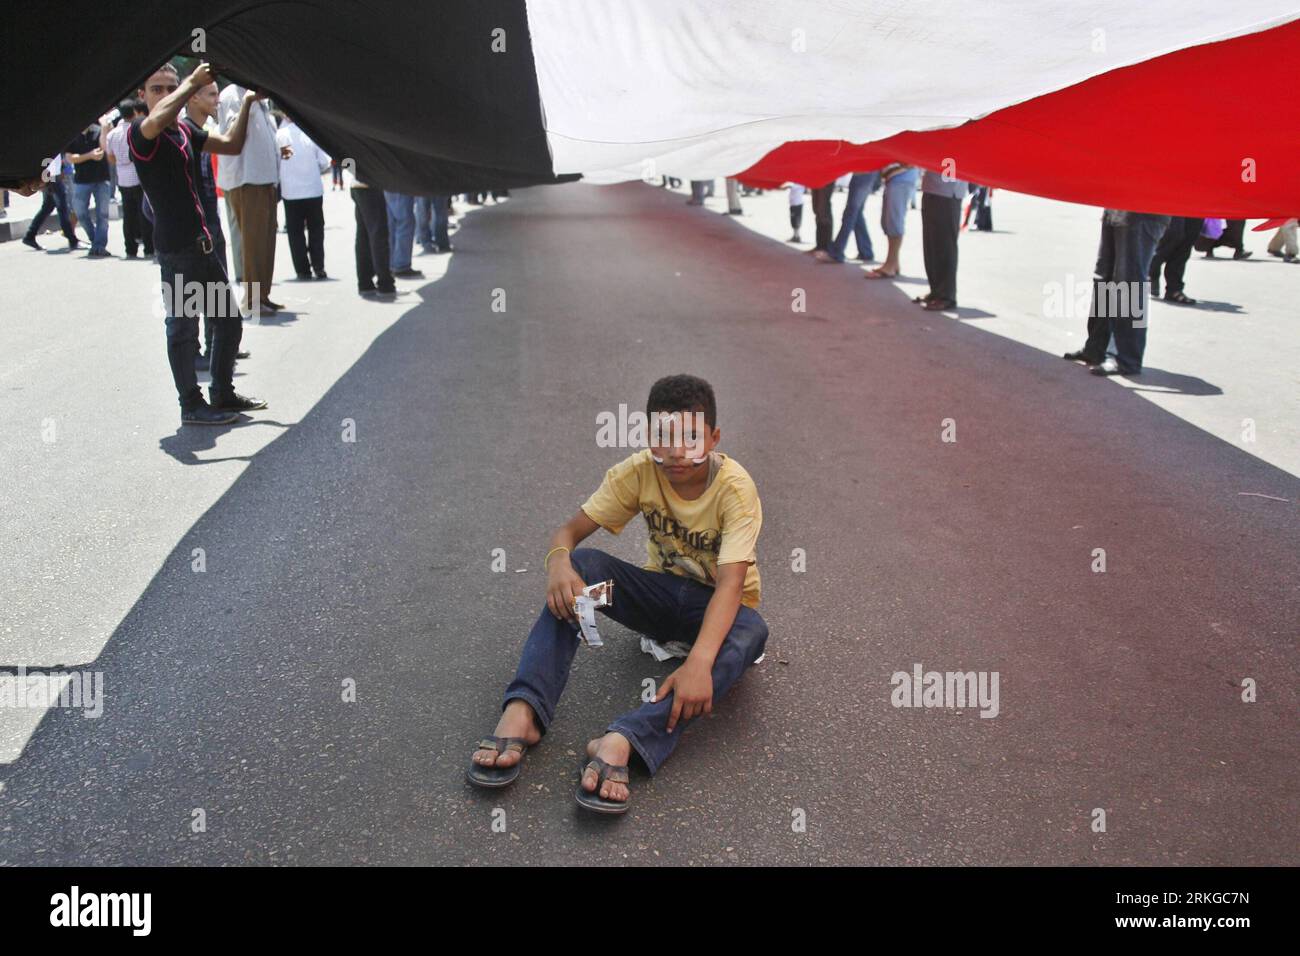 Bildnummer : 55579750 Datum : 08.07.2011 Copyright : imago/Xinhua (110708)-- LE CAIRE, 8 juillet 2011 (Xinhua) -- Un garçon assis sous un drapeau géant lors d'une manifestation de masse organisée sur la place Tahrir, le Caire, Egypte, le 8 juillet 2011. Des milliers d'Égyptiens ont afflué sur la place Tahrir du centre du Caire dans ce qu'ils ont appelé le Premier vendredi de la Révolution, appelant l'armée au pouvoir à satisfaire toutes les exigences de la Révolution du 25 janvier. Ils ont également appelé à purifier et à restructurer les institutions policières, et à accélérer les procès de tous les anciens responsables du régime et policiers impliqués dans le meurtre de manifestants et dans le chaos. Banque D'Images